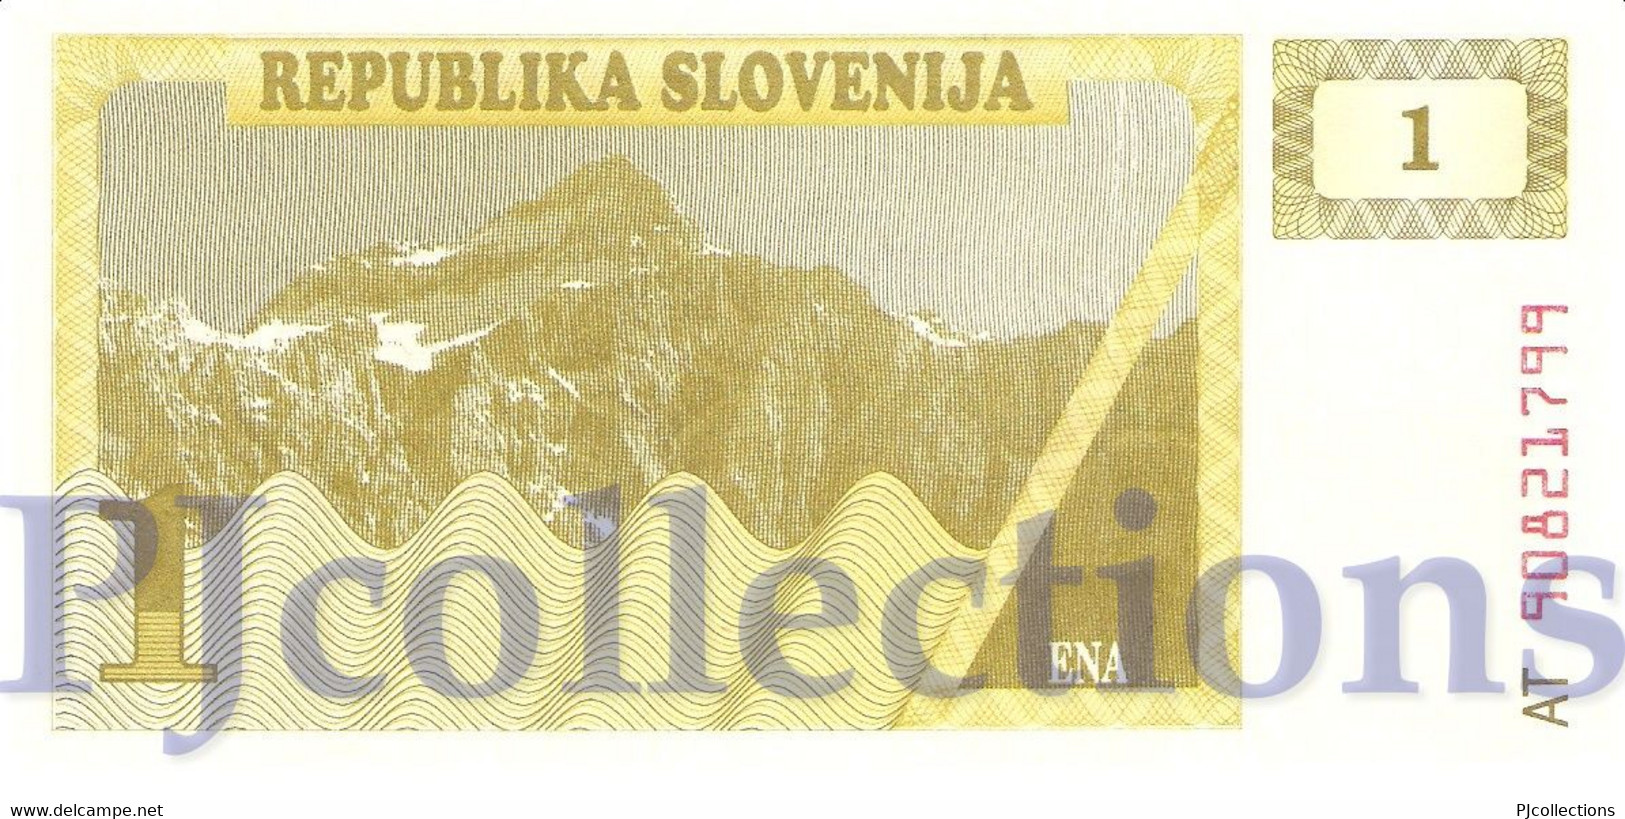 SLOVENIA 1 TOLAR 1990 PICK 1a XF+ - Slovénie